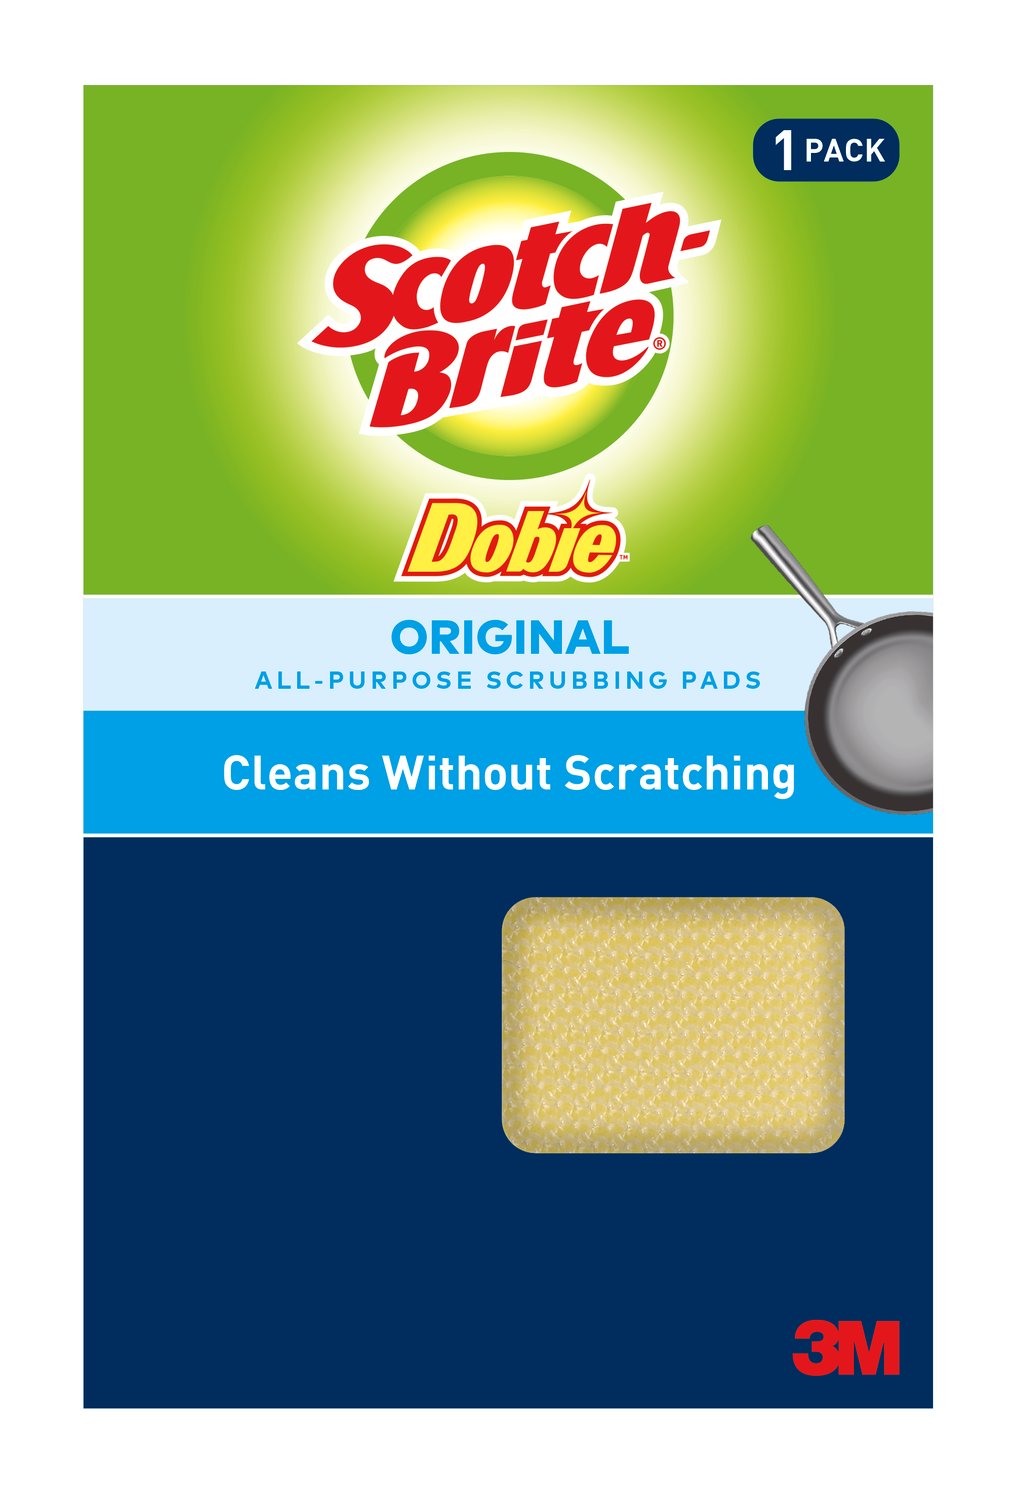 7010383677 - Scotch-Brite Dobie All Purpose Cleaning Pad 720, 4.3 in x 2.6 in x 0.5
in, 9/case